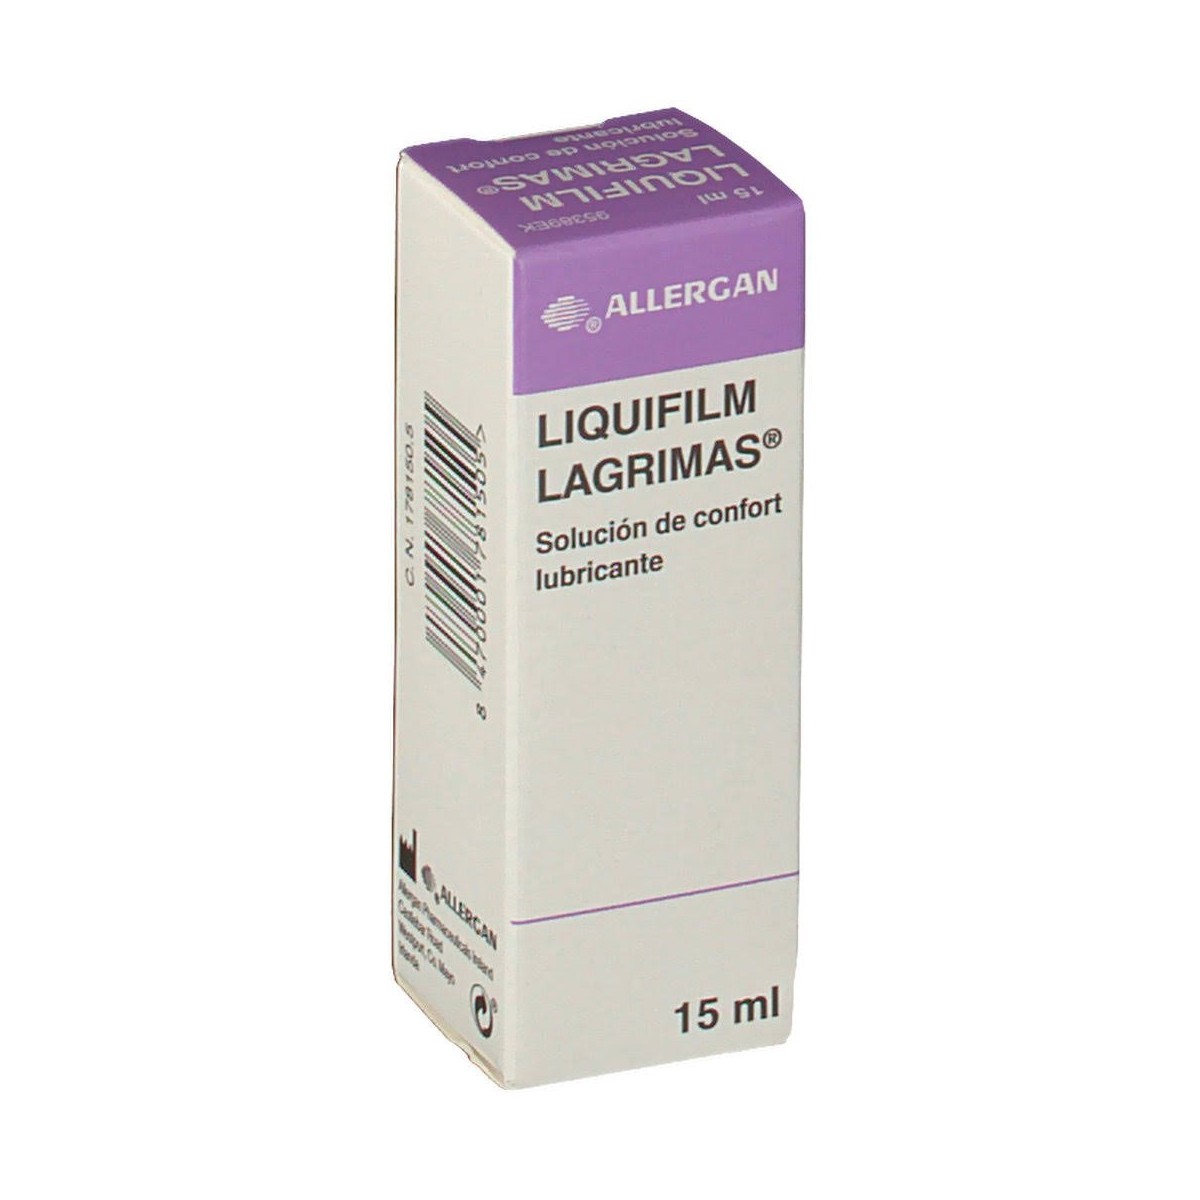 liquifilm lagrimas 15 ml